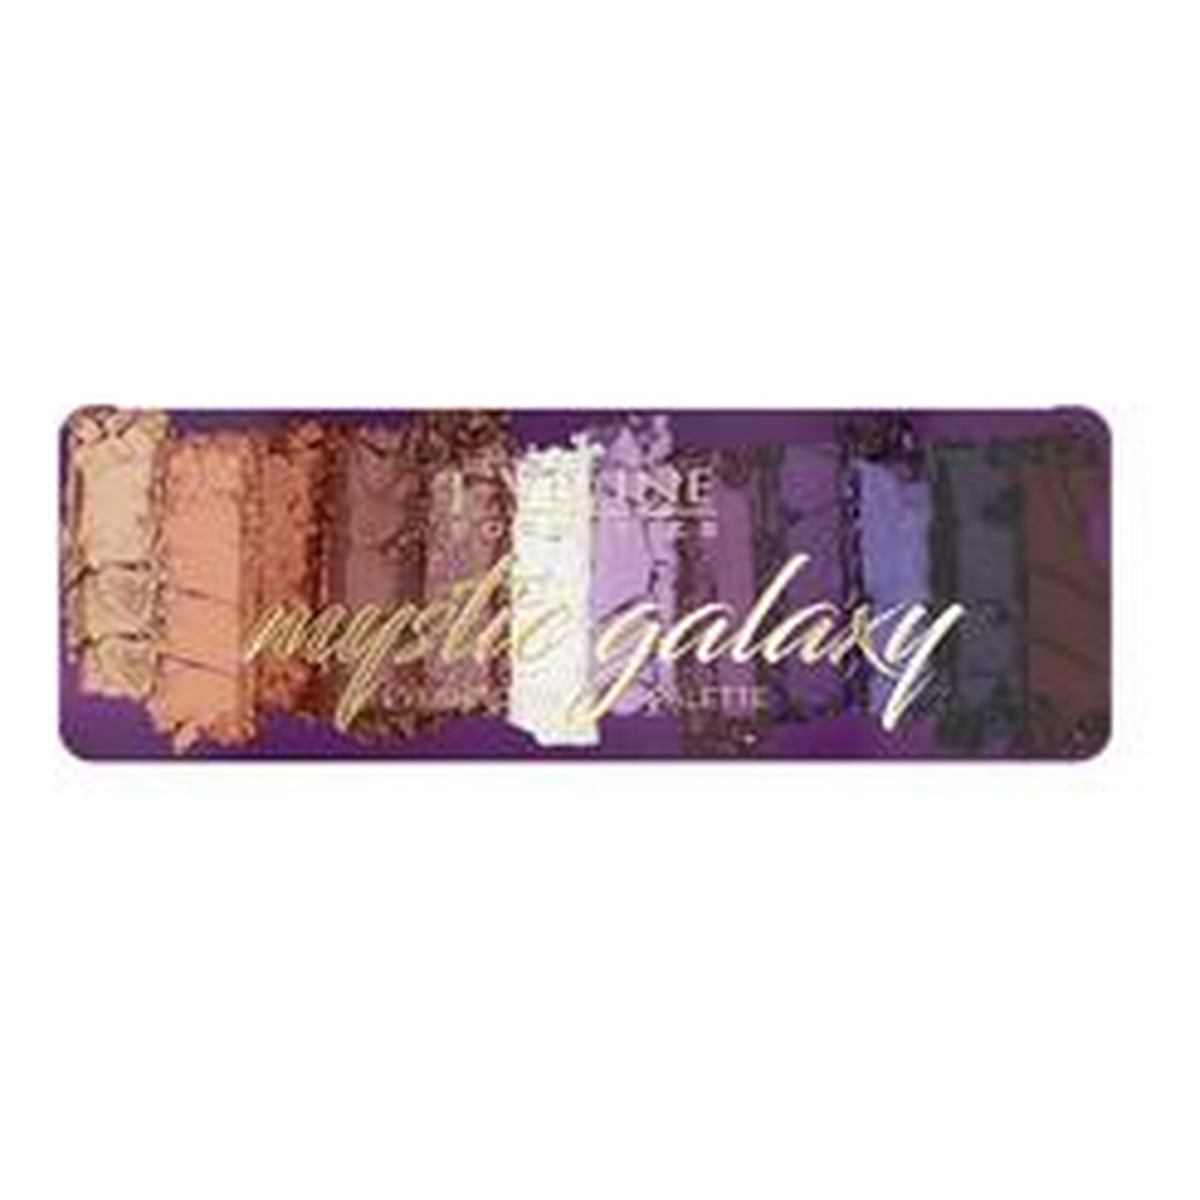 Eveline Cosmetics Mystic Galaxy Eyeshadow Palette paleta 12 cieni do powiek 12g